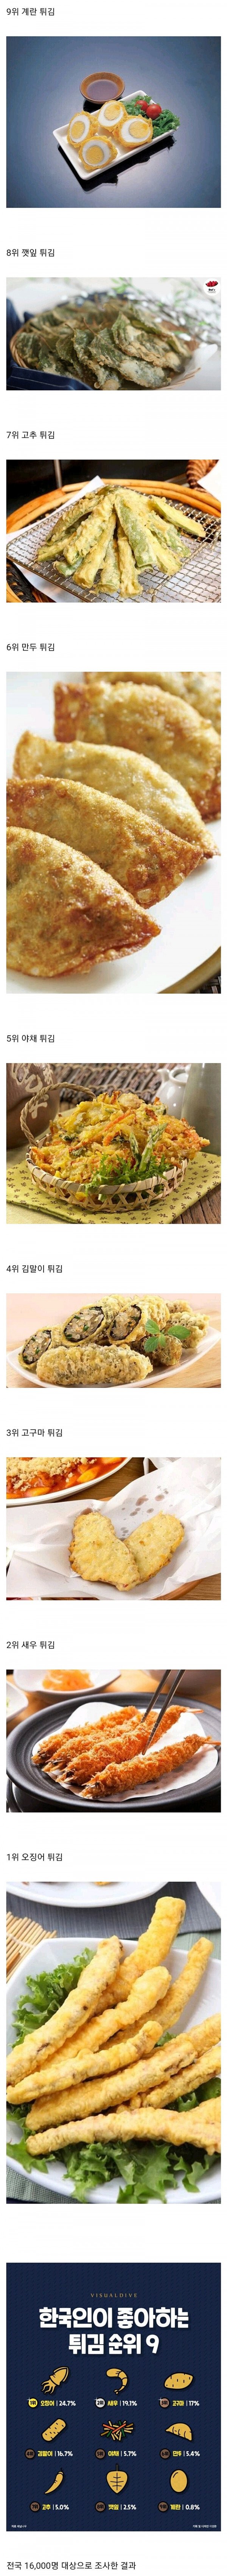 한국인이 좋아하는 튀김 베스트 !